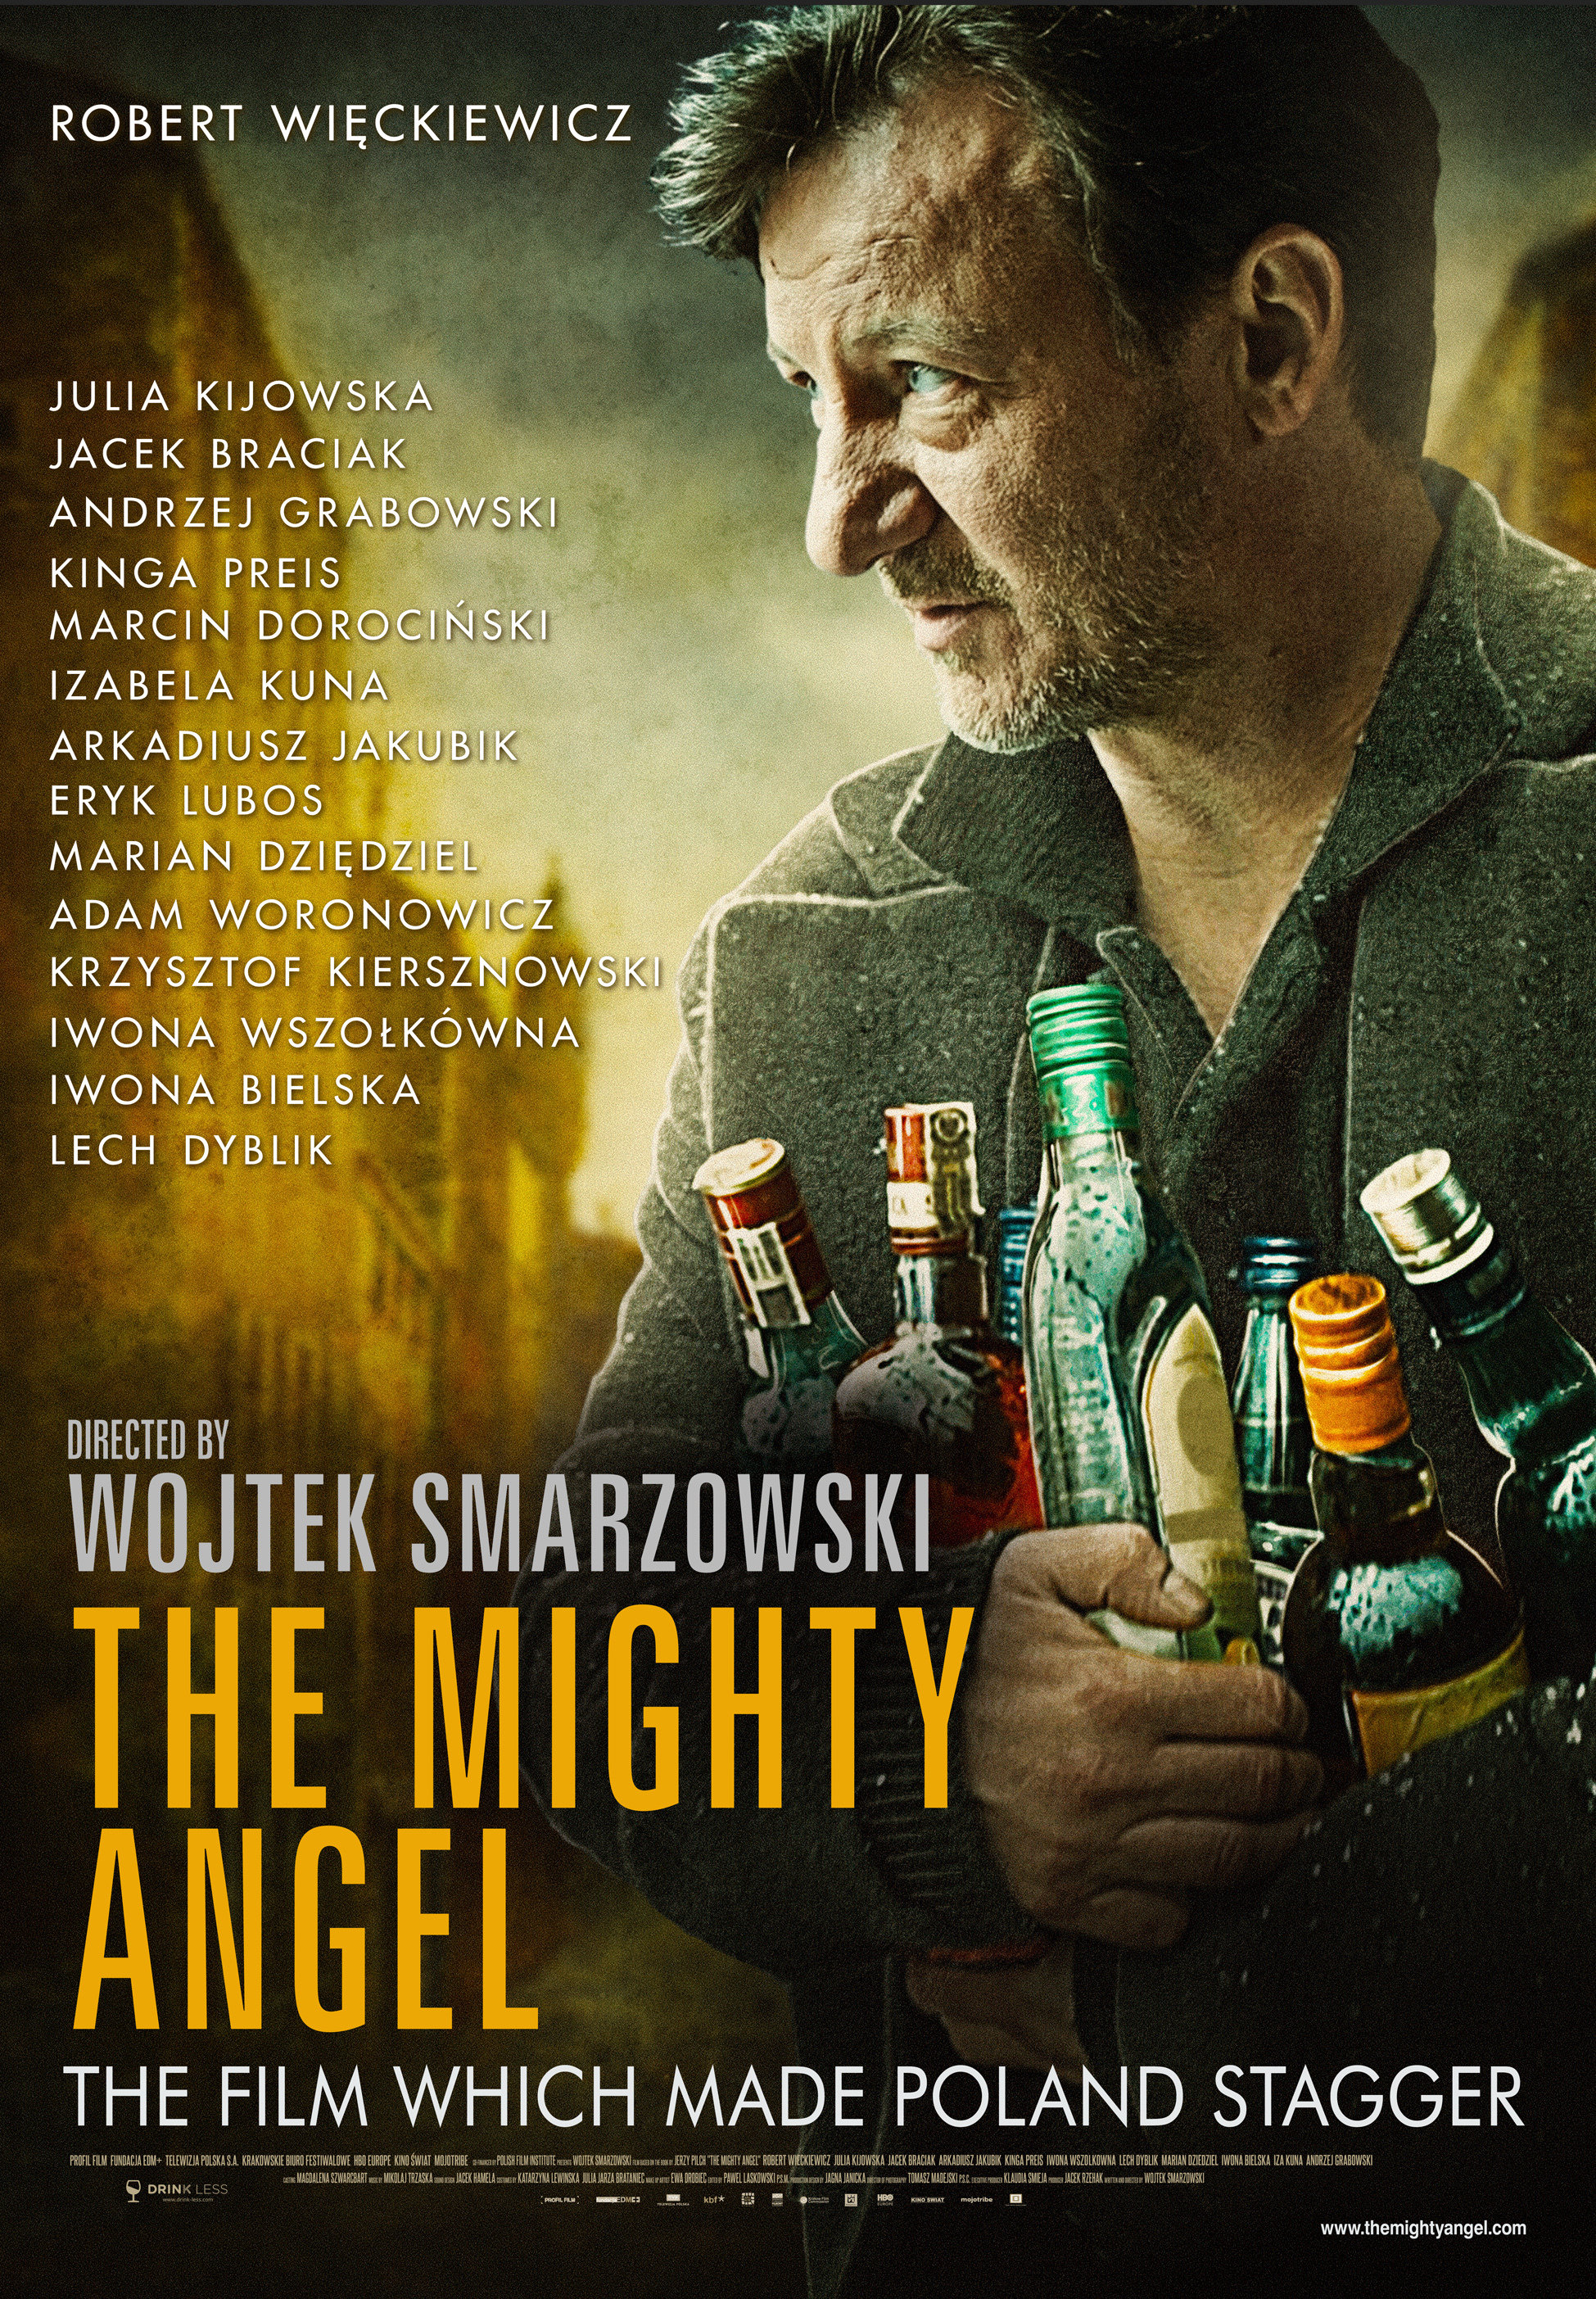 Robert Wieckiewicz in Pod mocnym aniolem (2014)